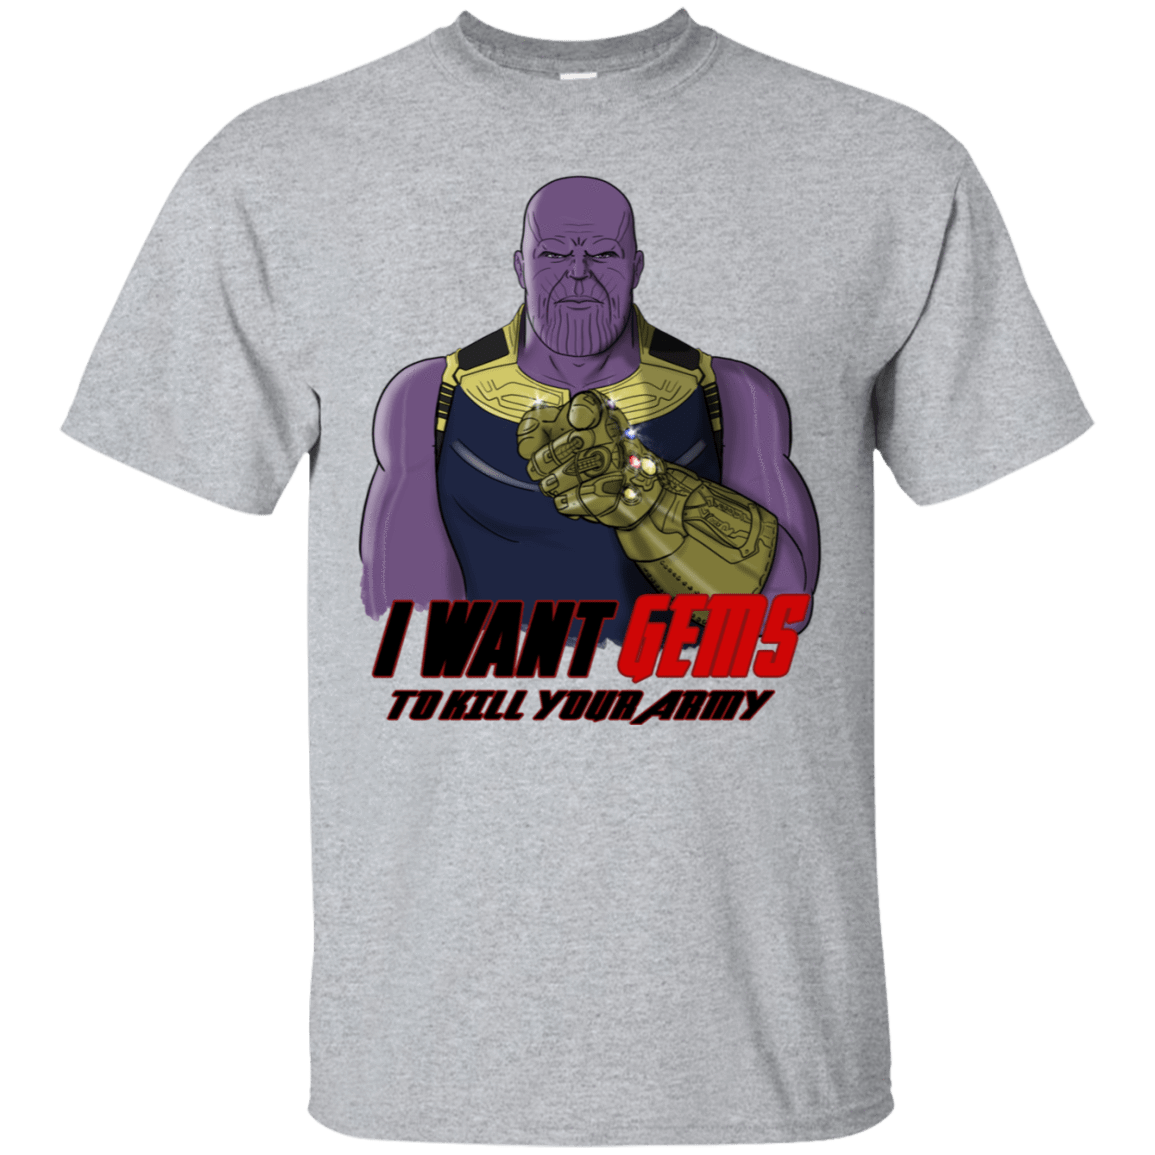 T-Shirts Sport Grey / S Thanos Sam T-Shirt